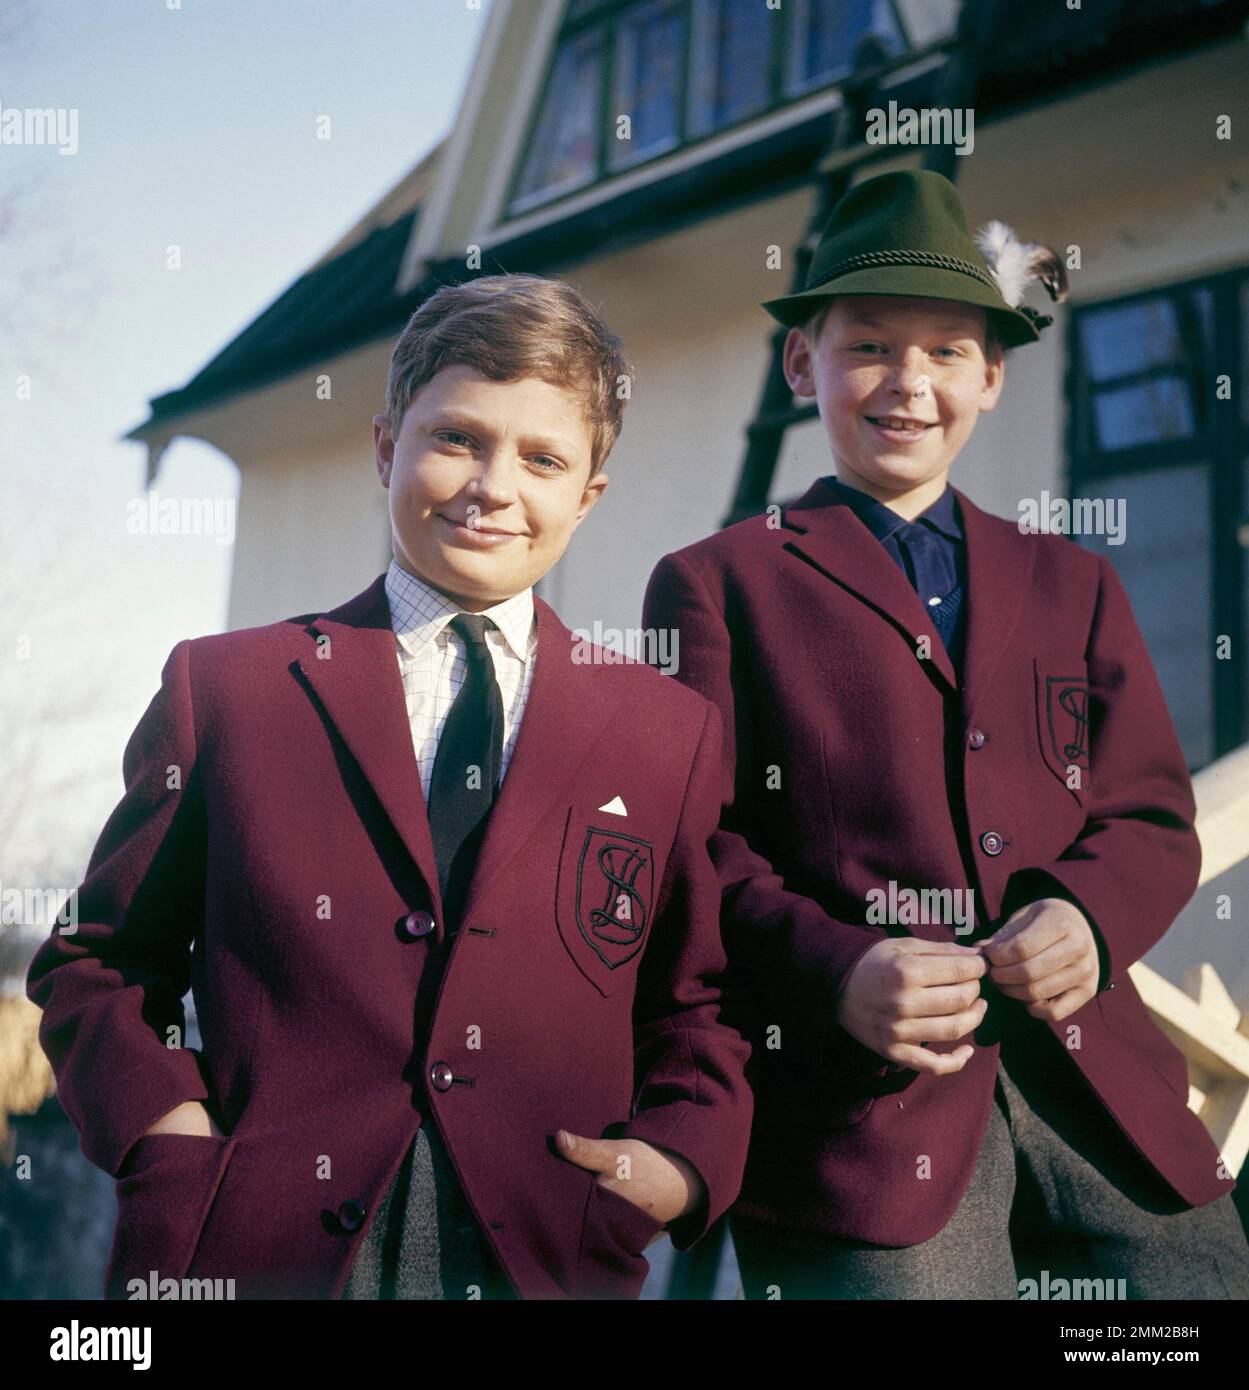 Carl XVI Gustaf, re di Svezia. Nato il 30 aprile 1946. Nella foto, l'età di 14 anni è quella di un ragazzo della scuola privata Sigtuna humanistiska läroverk 1960. rif 2-39-6 Foto Stock